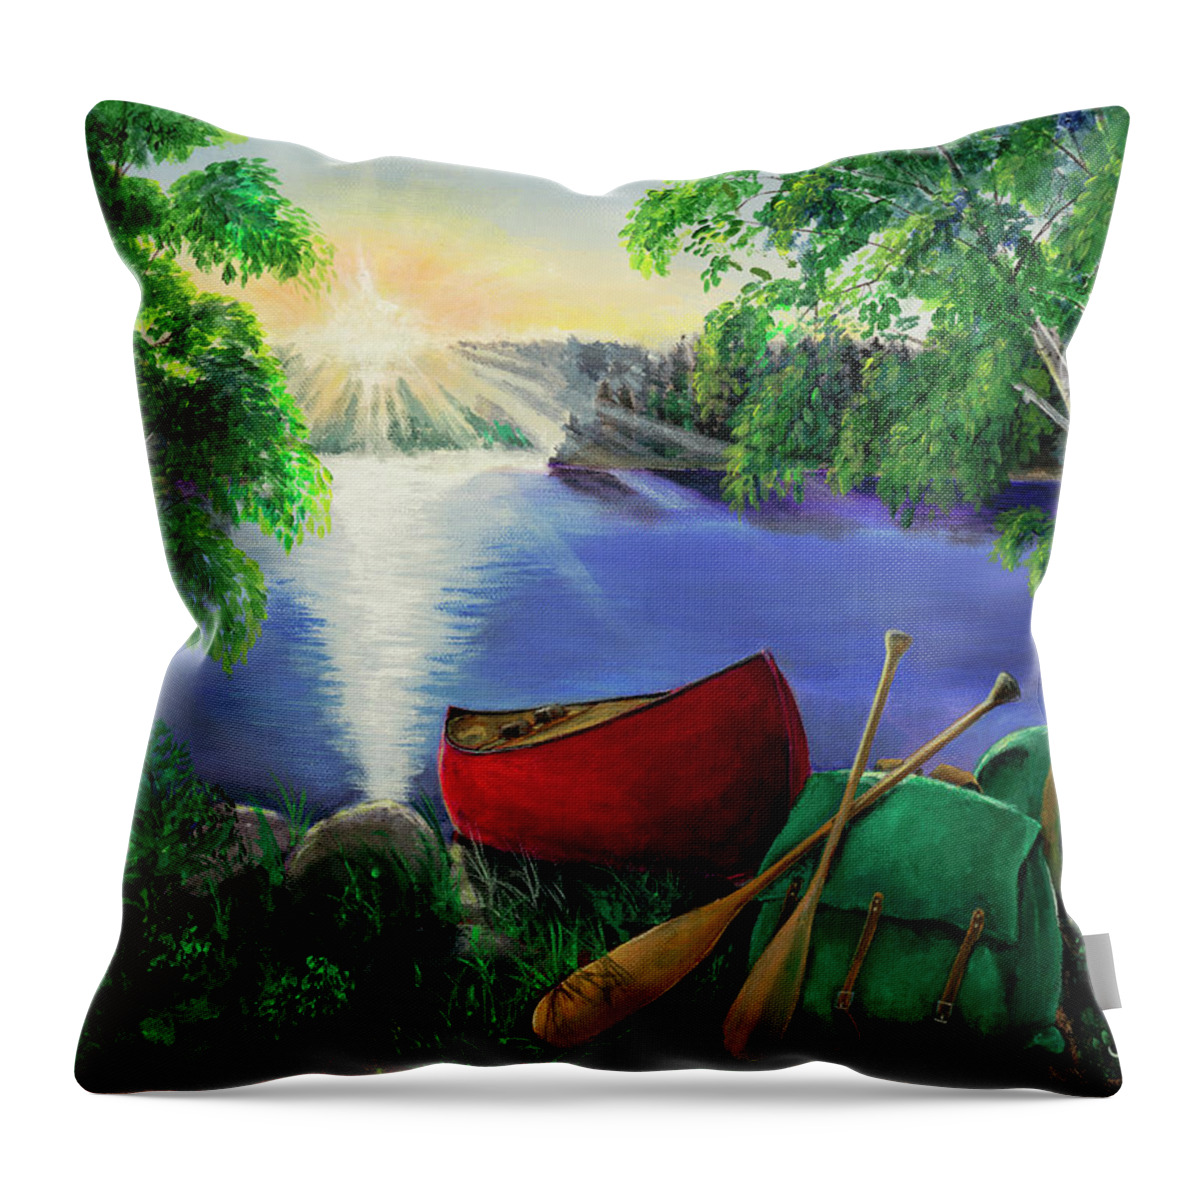 Canoe Throw Pillow featuring the digital art Morning Sun by Joe Baltich